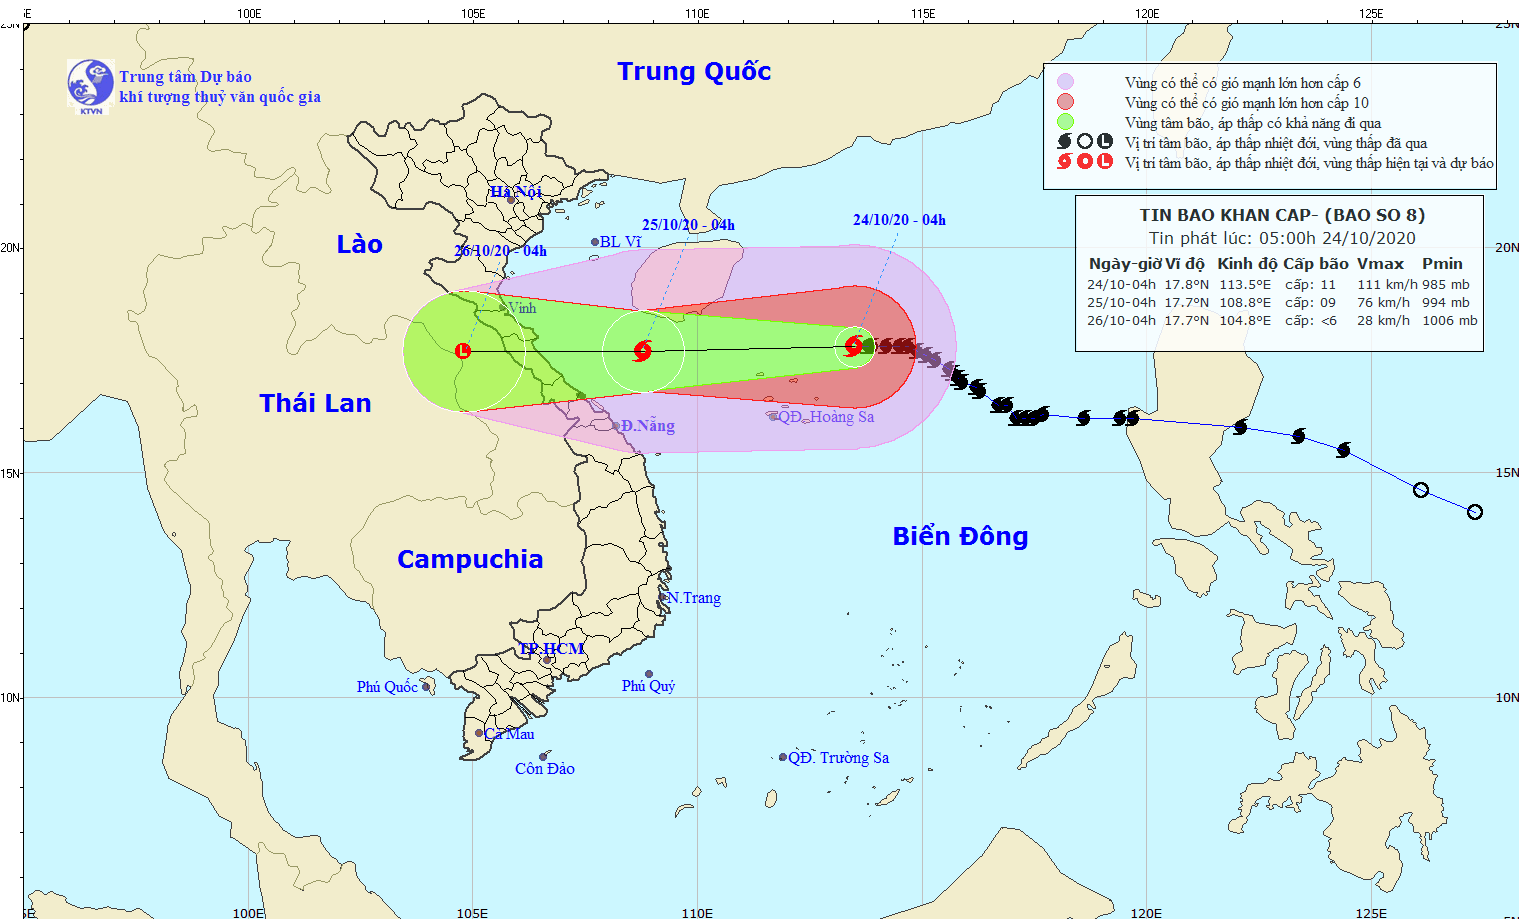 Dự báo thời tiết: Tin bão khẩn cấp cơn bão số 8 tại Biển Đông